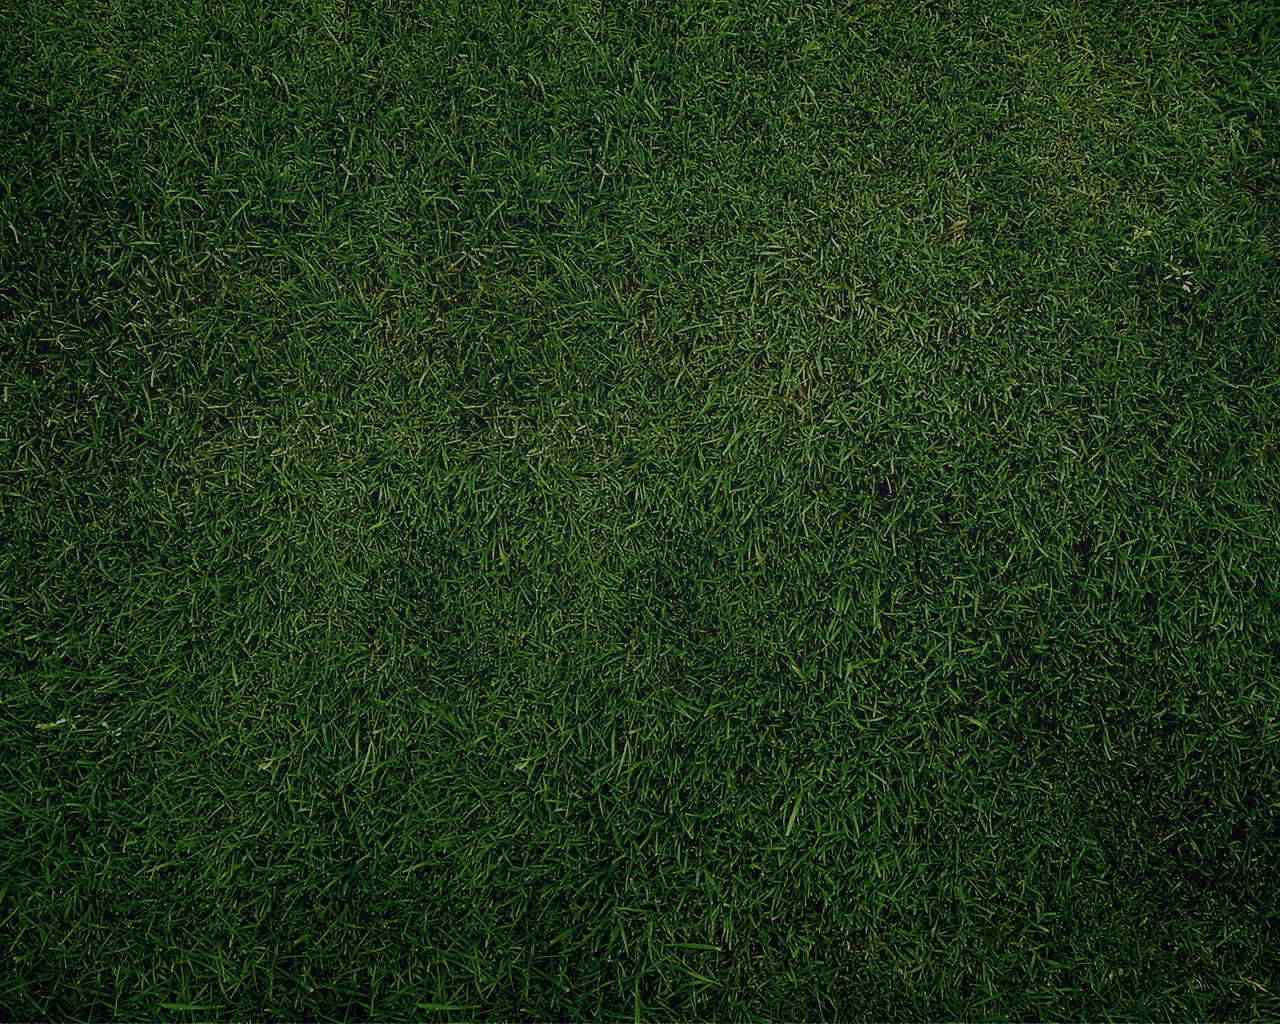 Картинка: Поле, газон, трава, зелёная